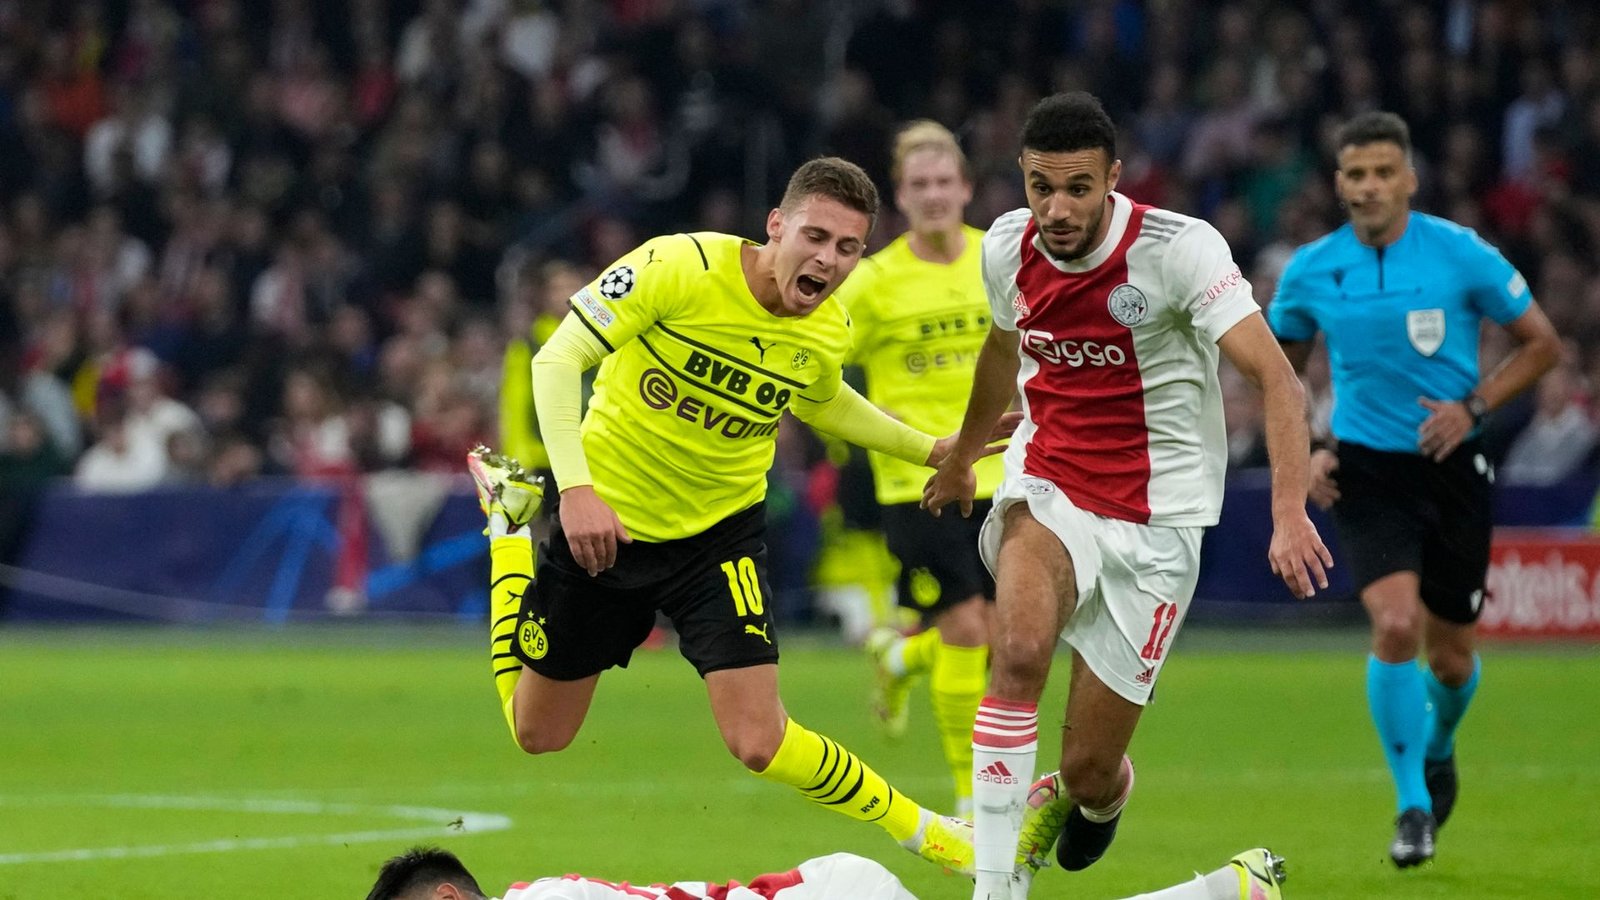 Amsterdams Noussair Mazraoui (r) soll zum FCB wechseln.Foto: Peter Dejong/AP/dpa